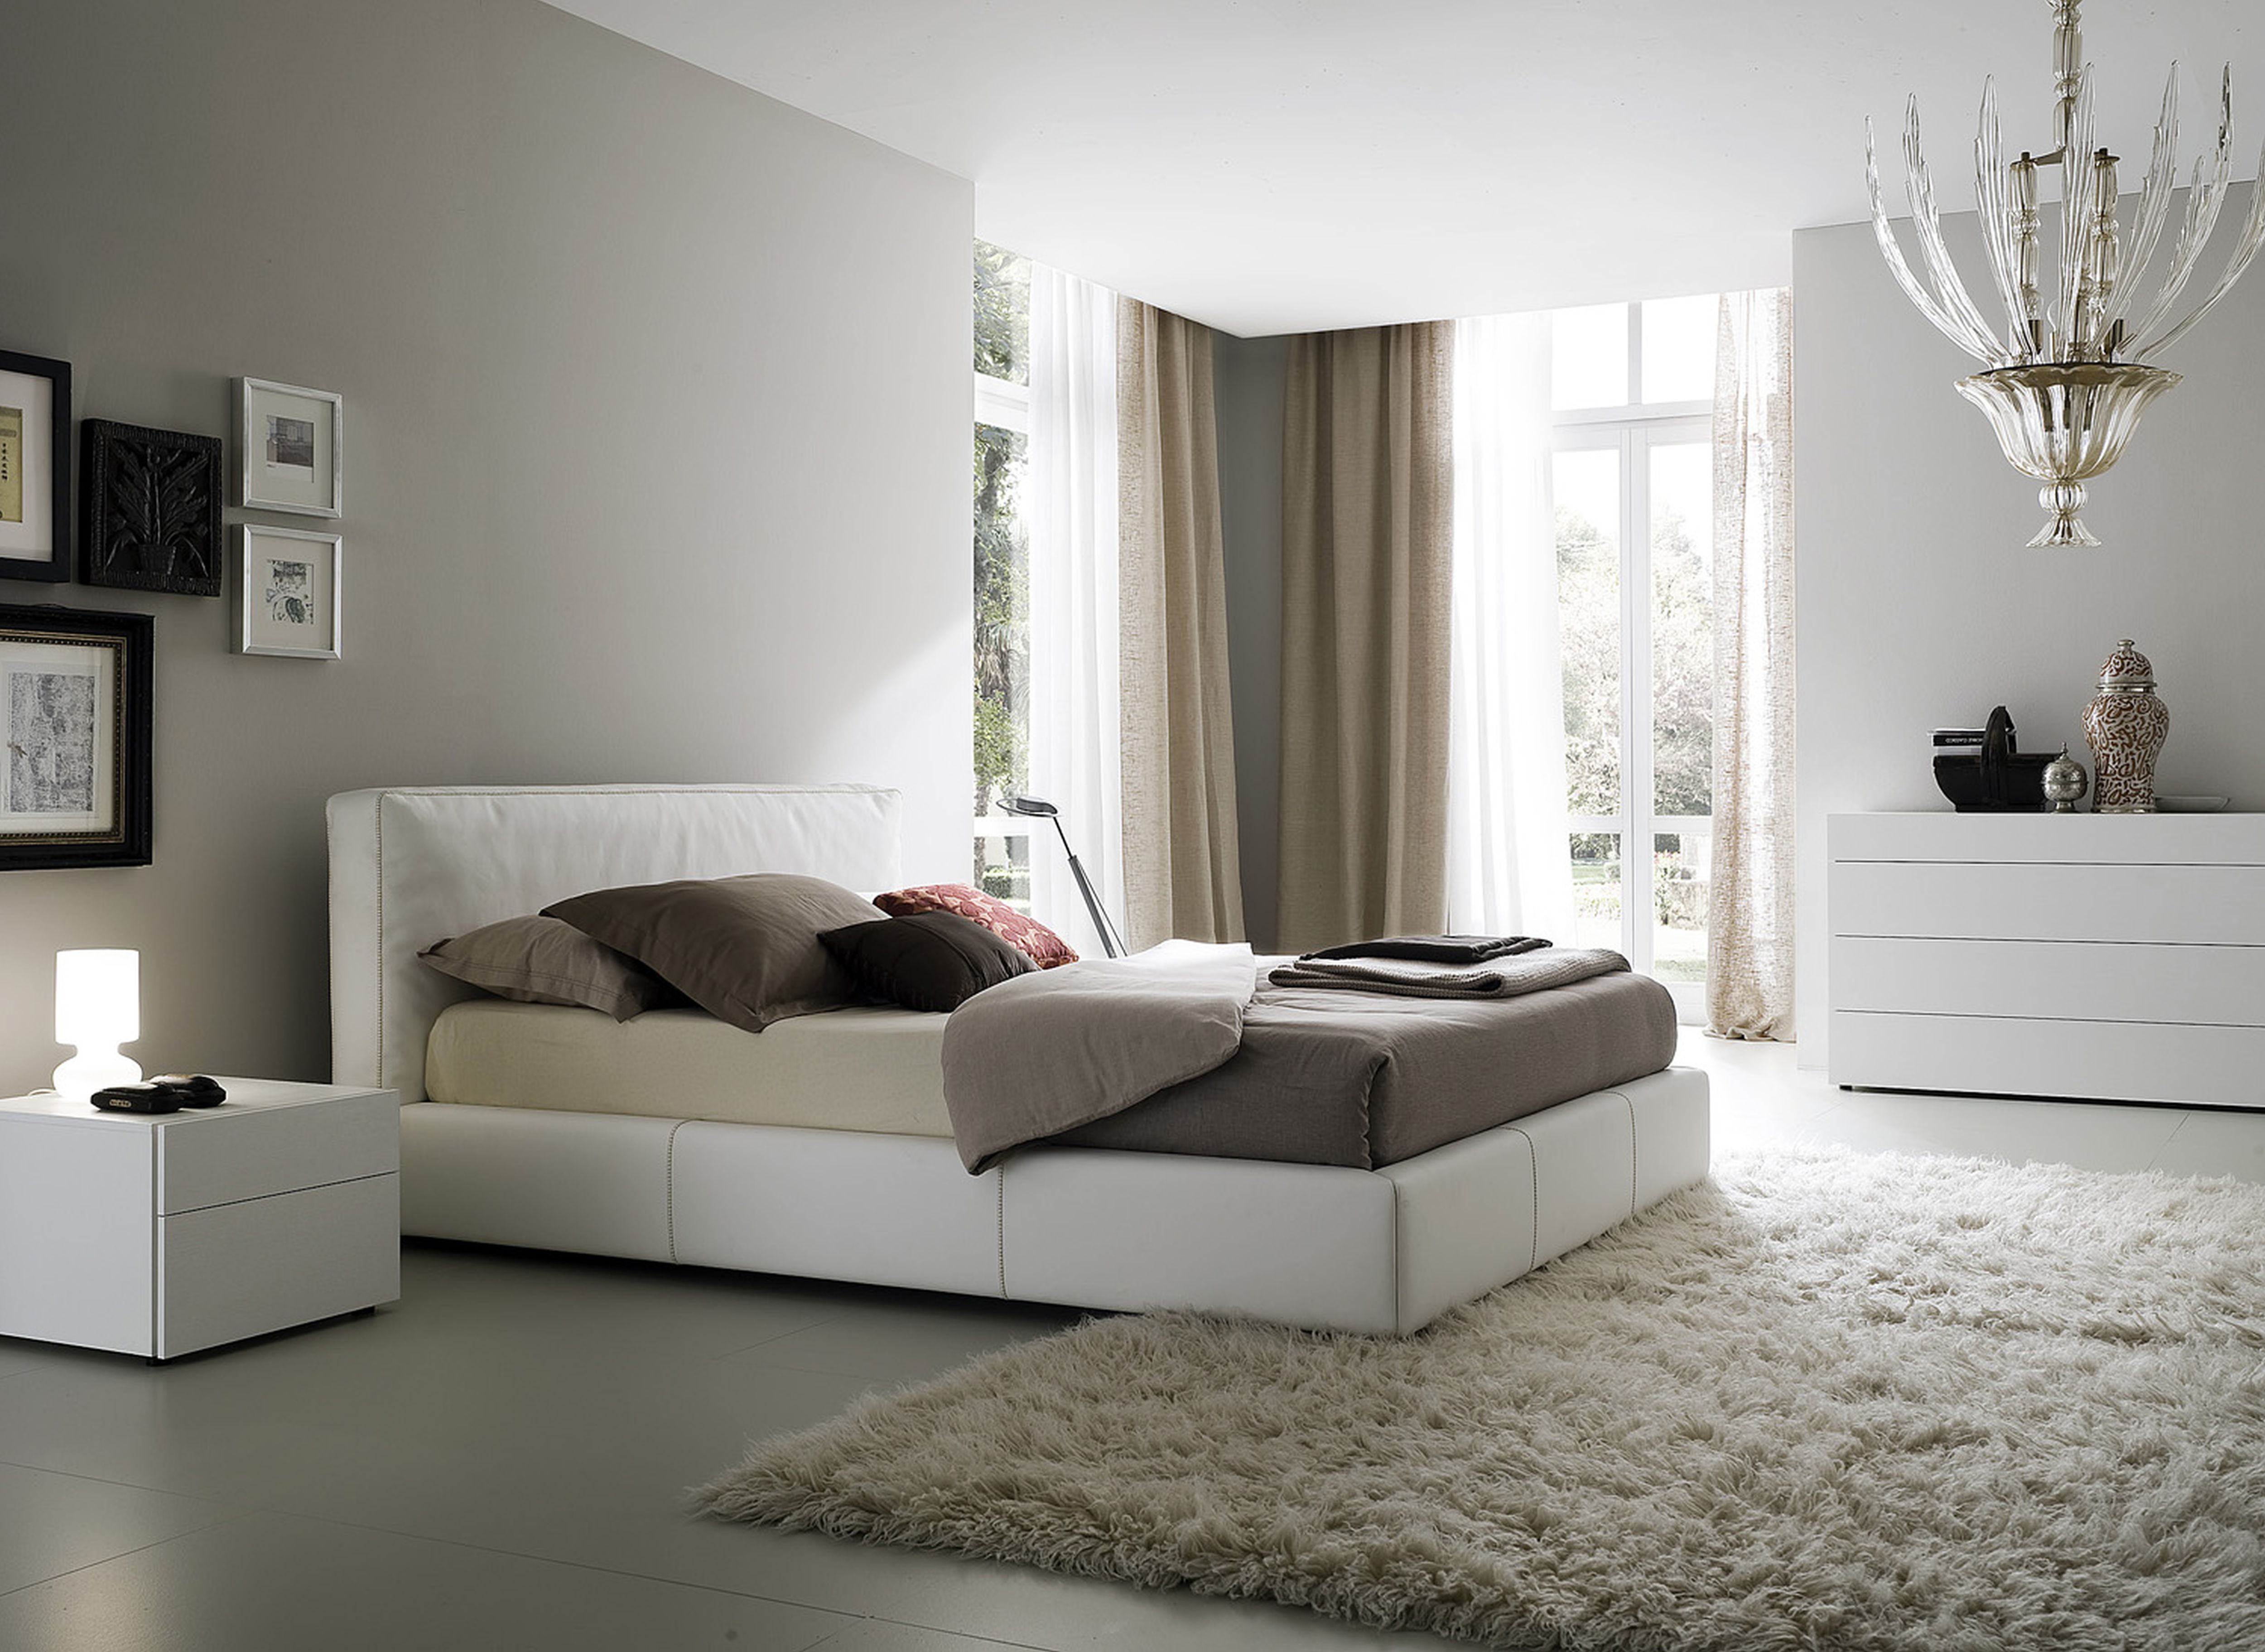 Hiasan dalaman bilik tidur utama warna putih dan kelabu lembut - Perabot putih menjadikan ruang nampak mewah